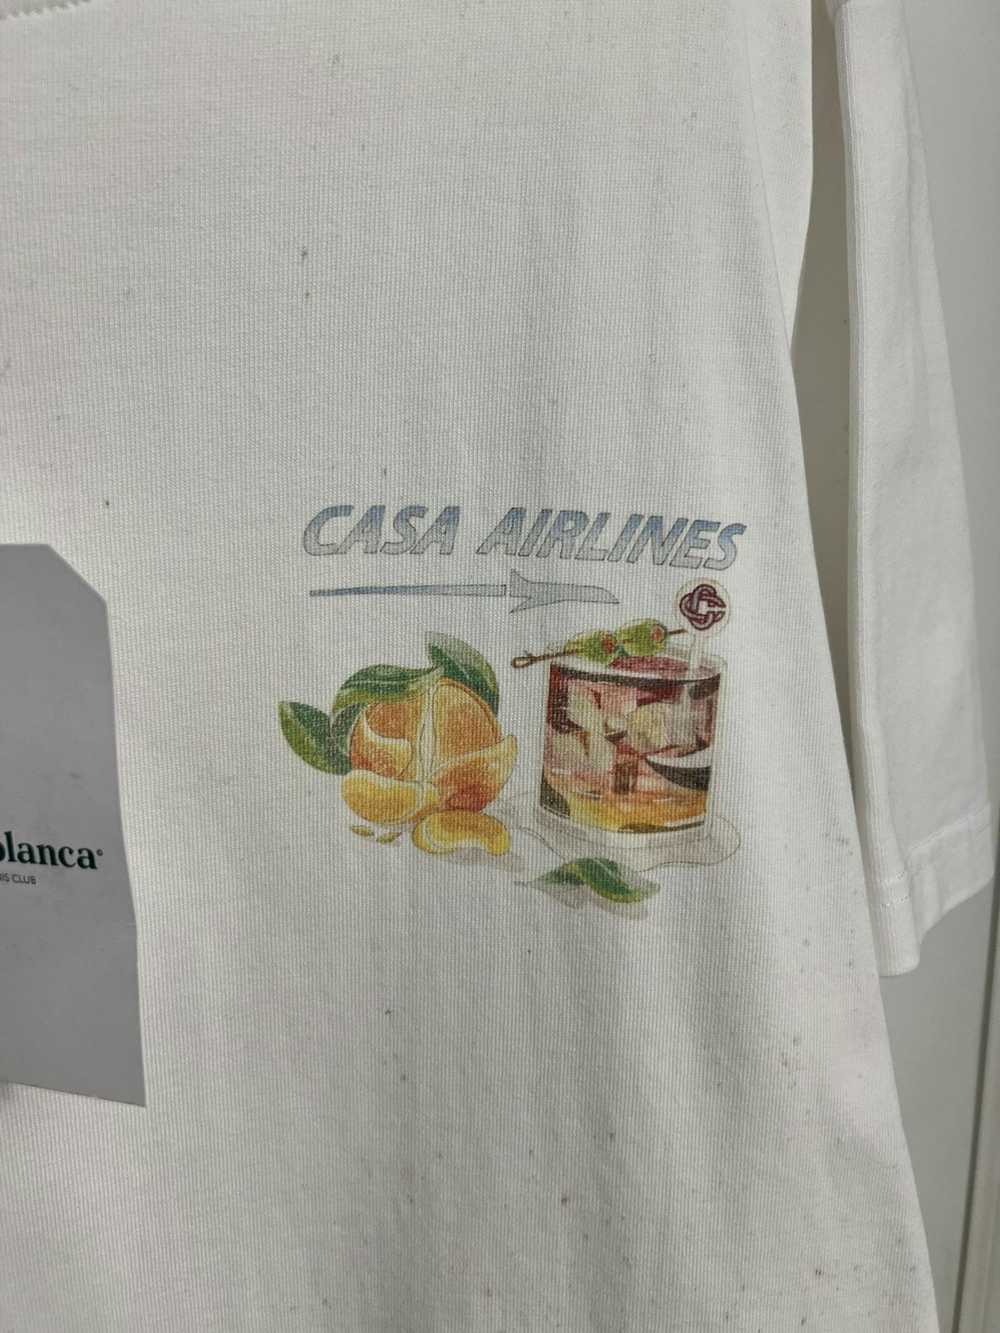 Casablanca Casablanca Airlines T shirt size medium - image 3